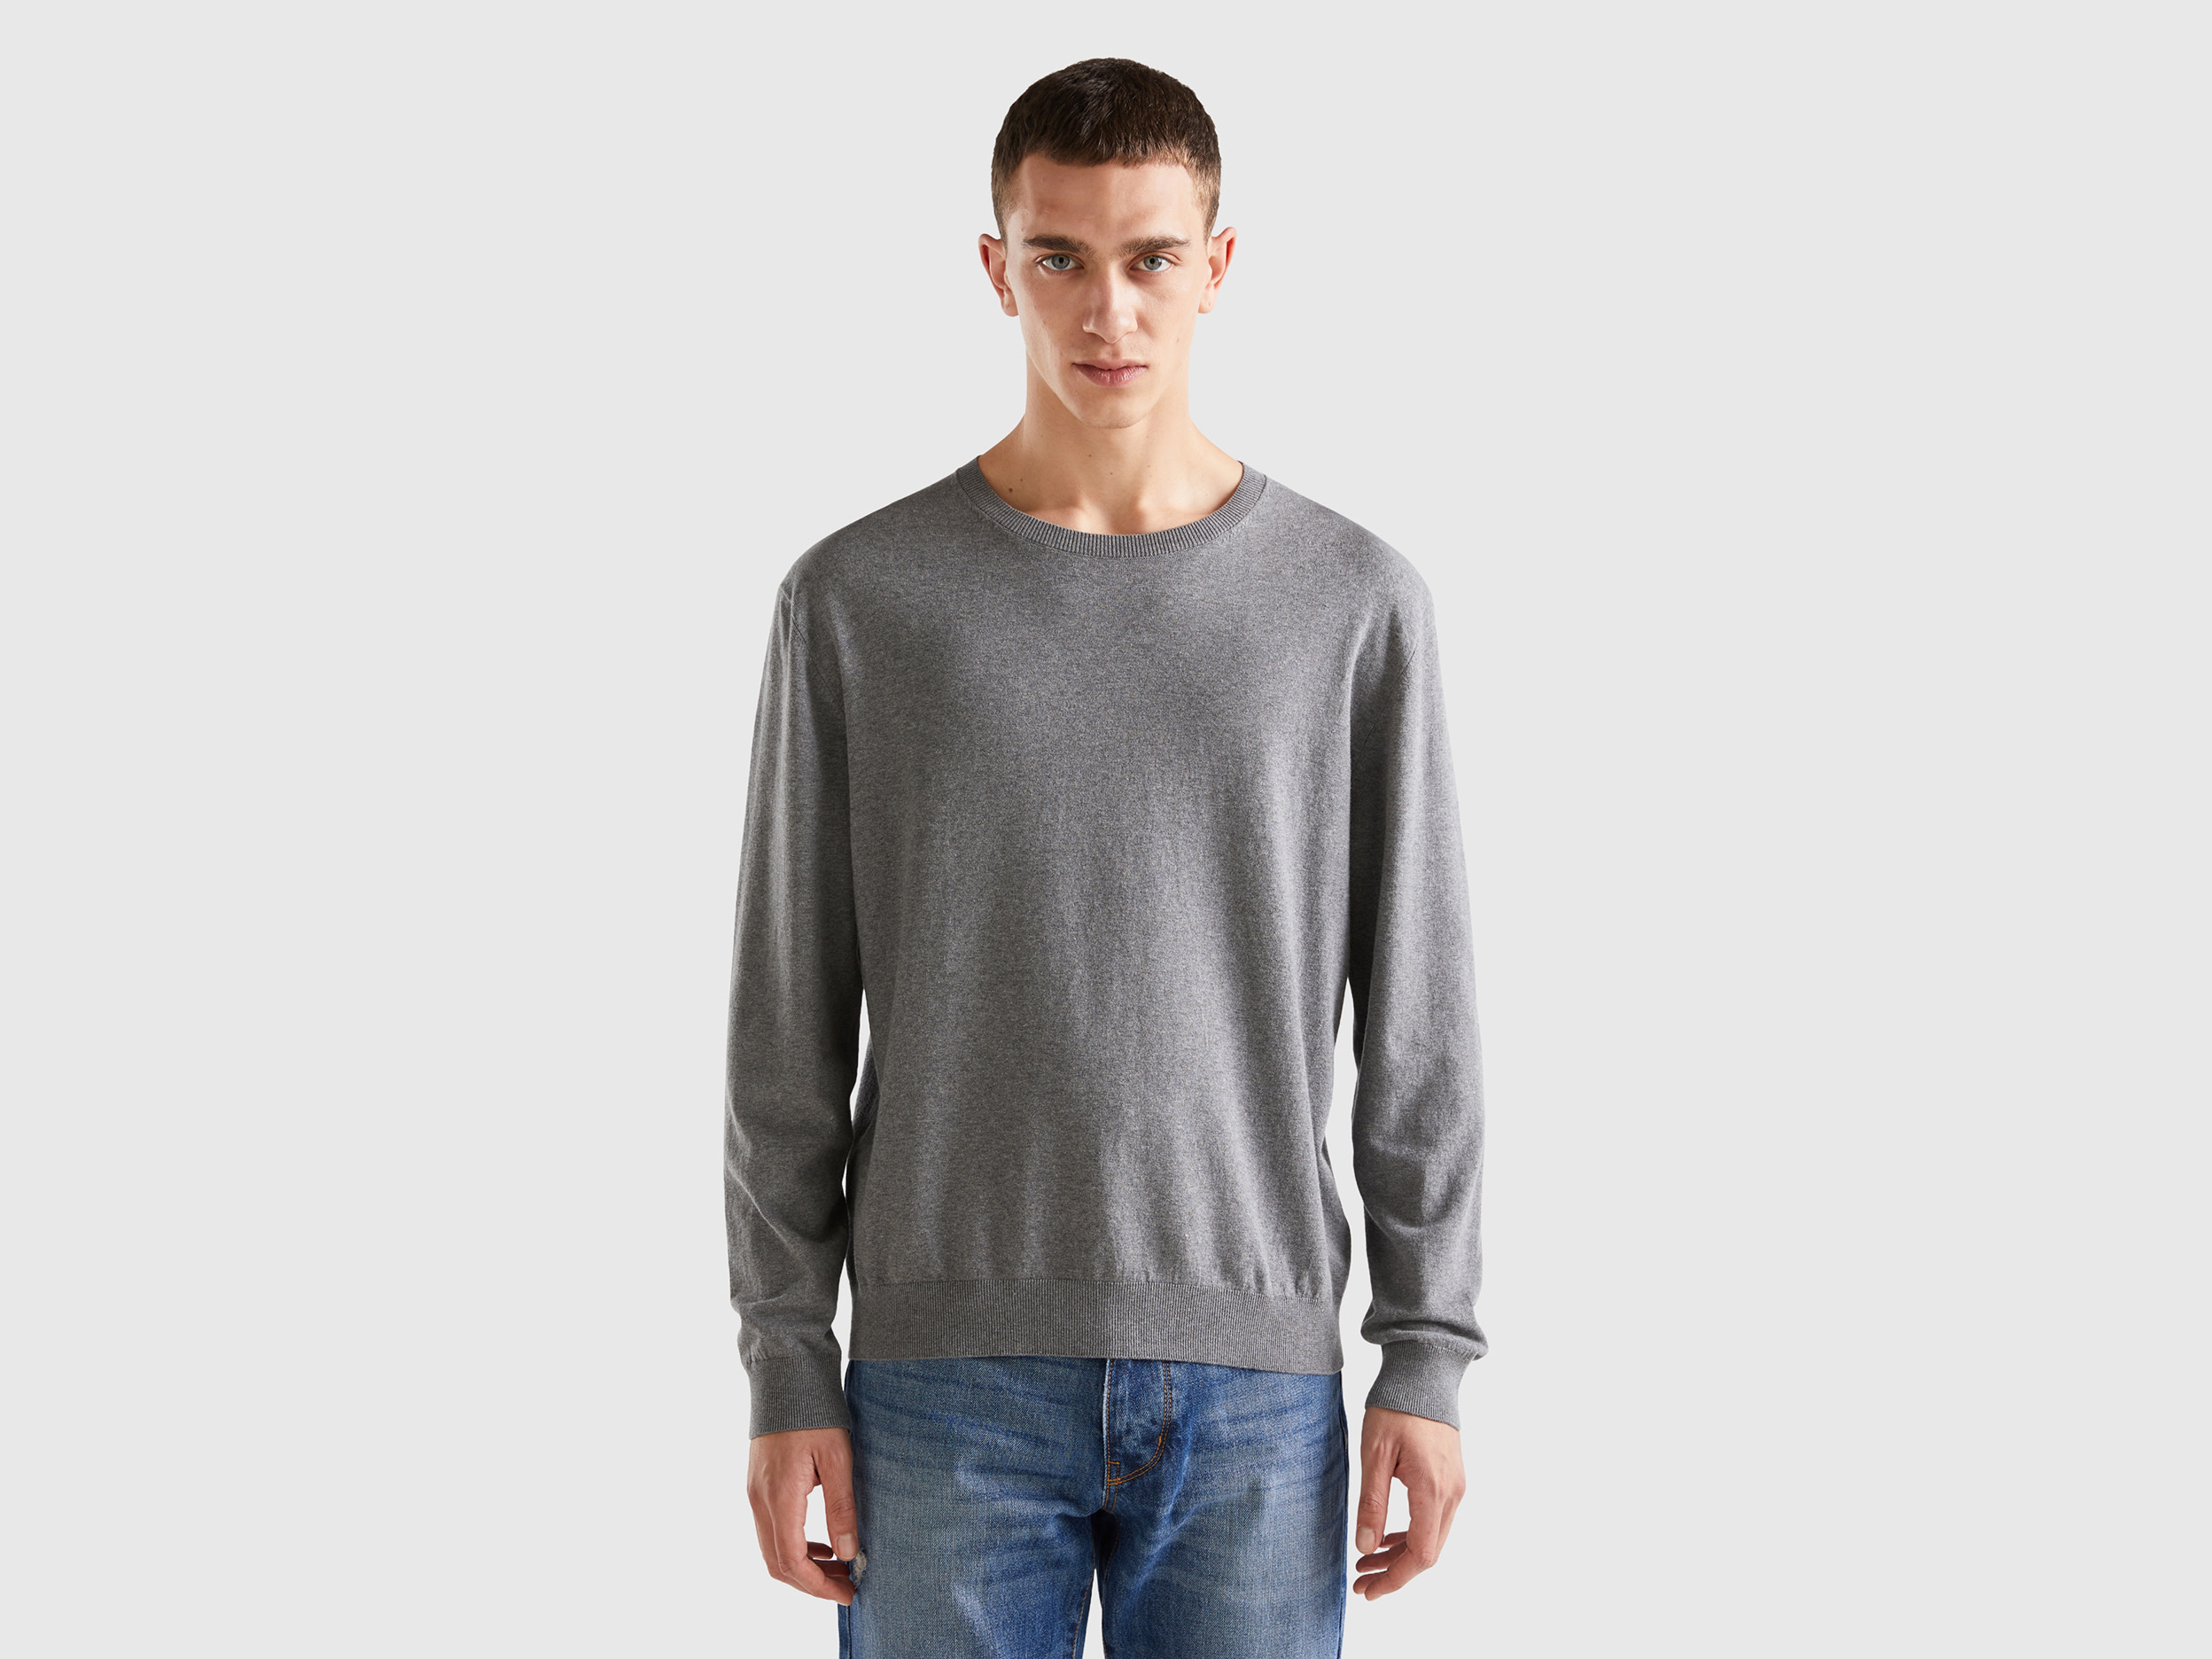 Benetton, Crew Neck Sweater In Lightweight Cotton Blend, size L, Dark Gray, Men